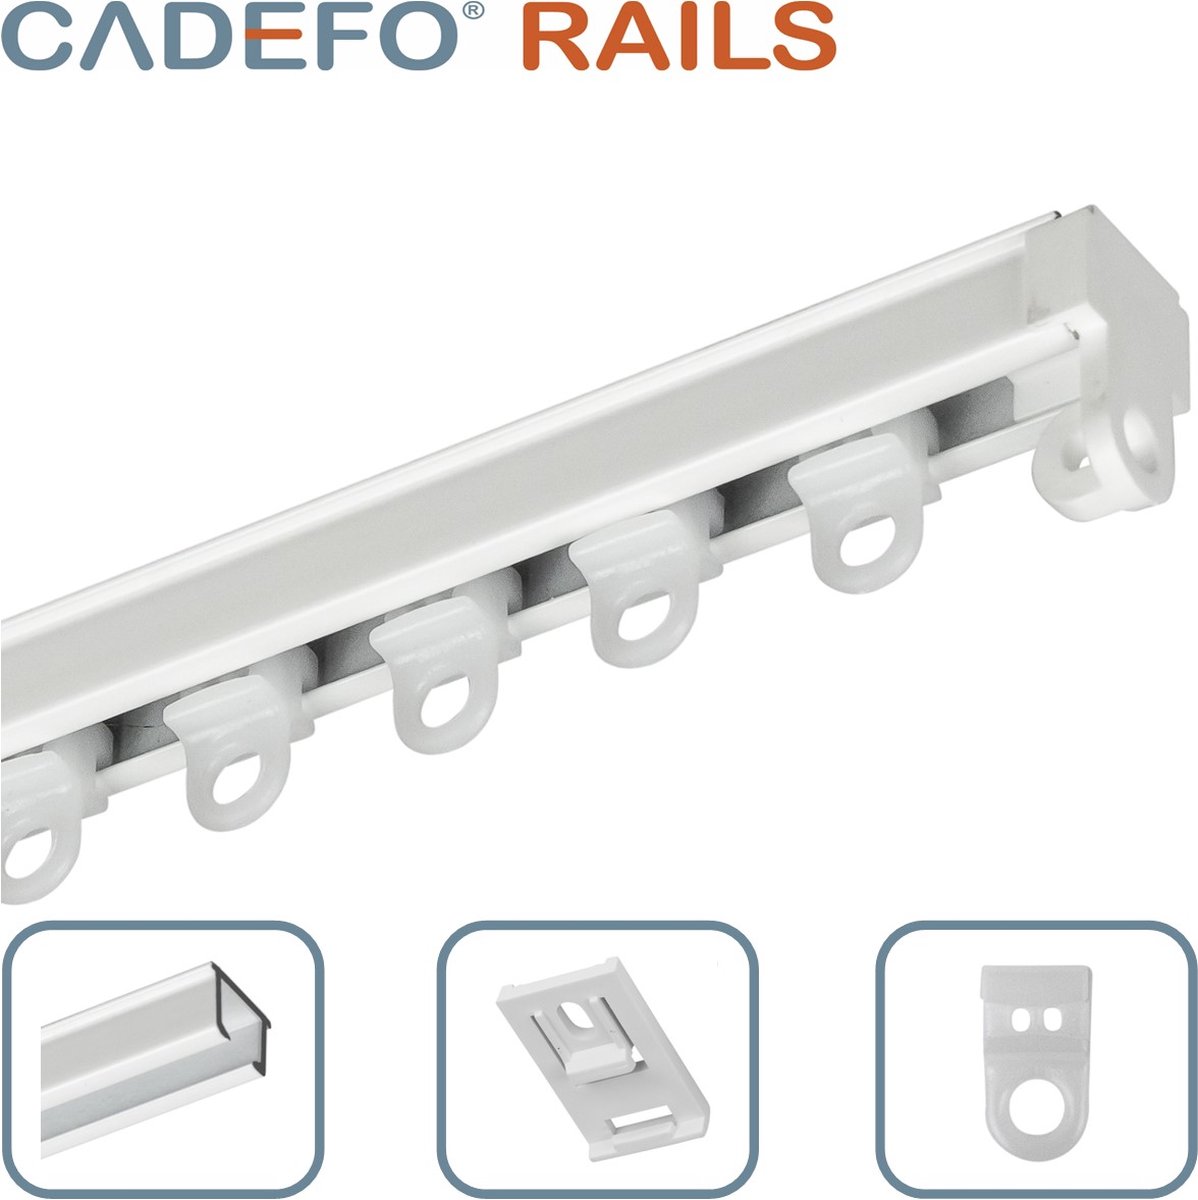 CADEFO RAILS (080 - 100 cm) Gordijnrails - Compleet op maat! - UIT 1 STUK - Leverbaar tot 6 meter - Plafondbevestiging - Lengte 86 cm